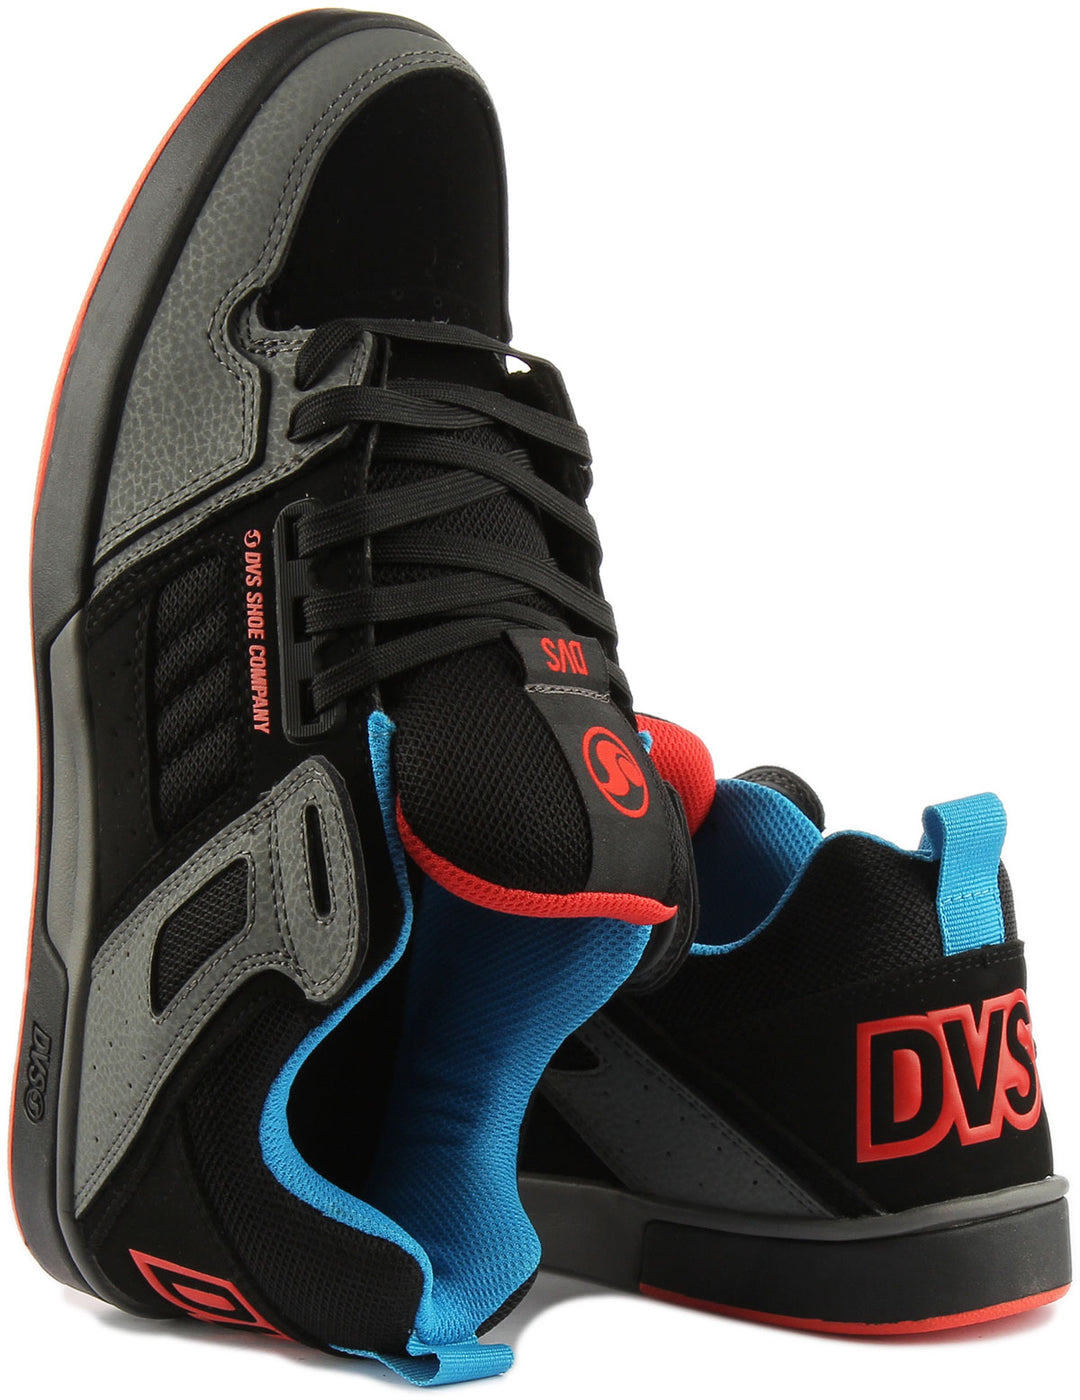  DVS Comanche 2.0 + Scarpe da ginnastica sintetiche in nabuk da uomo in nero rosso